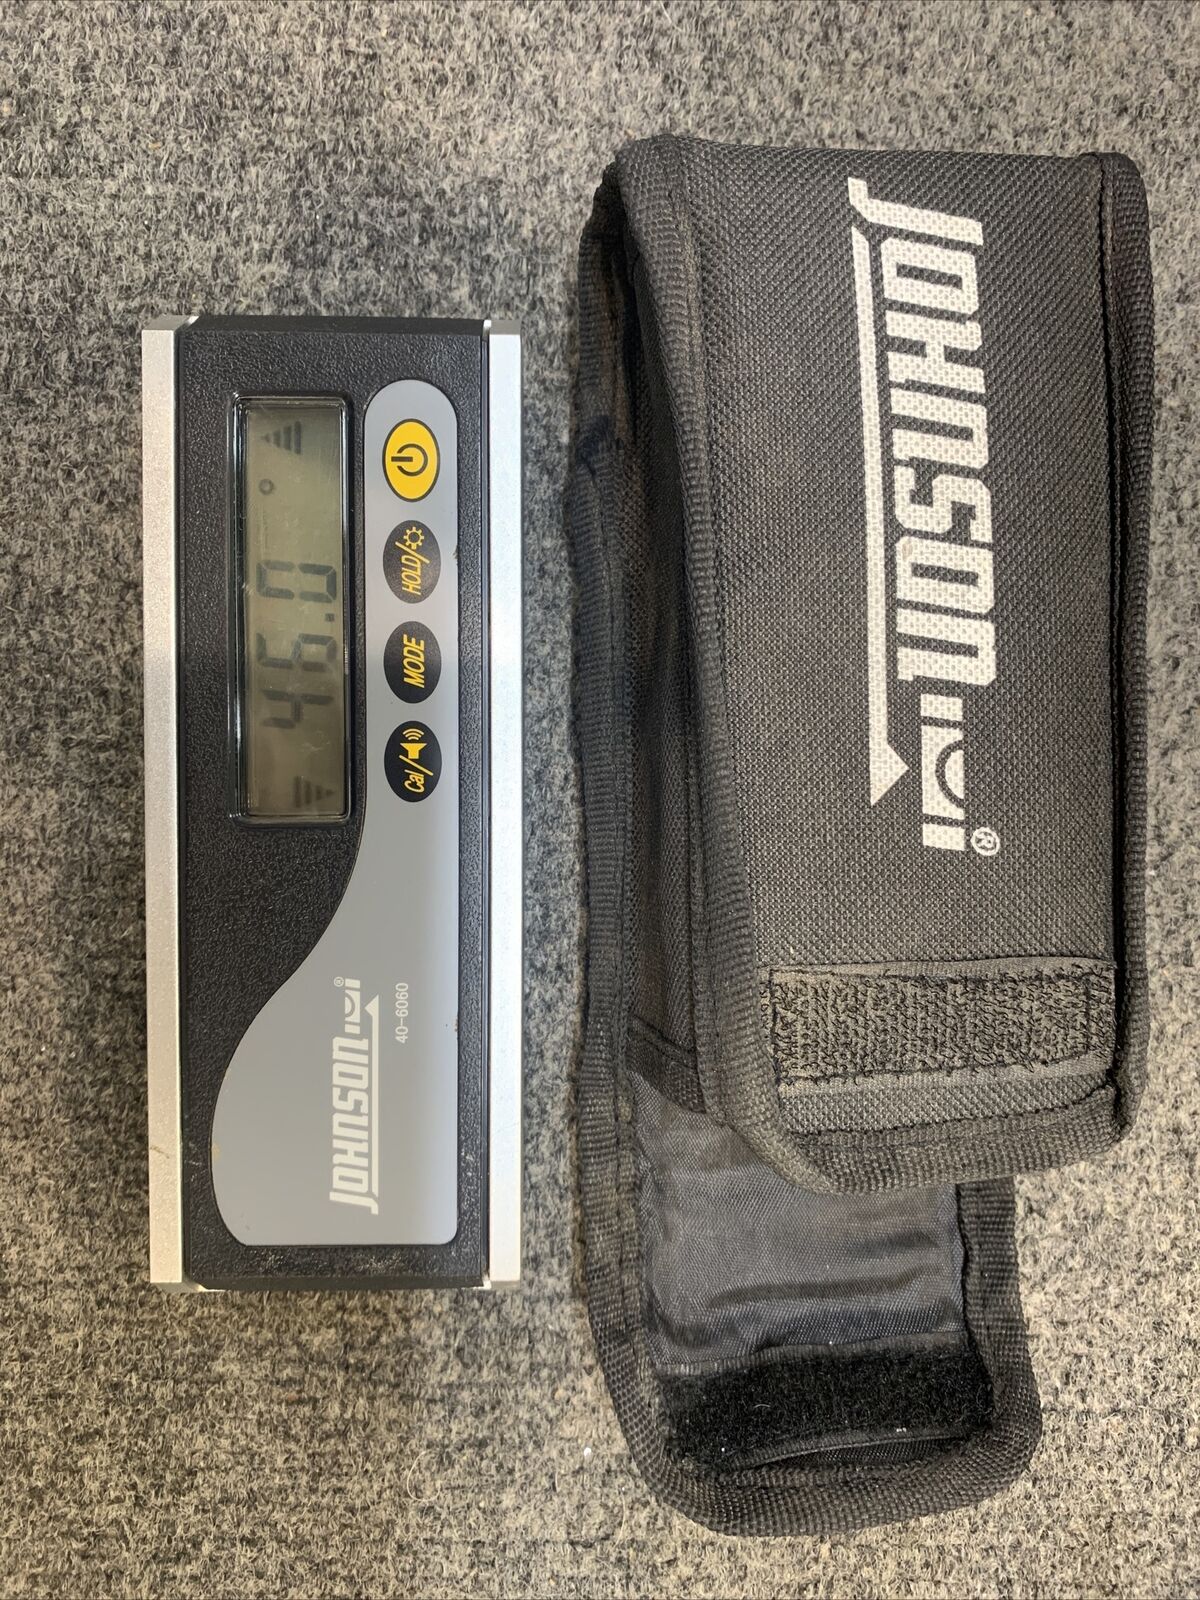 Johnson Level & Tool Electronic Level Inclinometer #40-6060